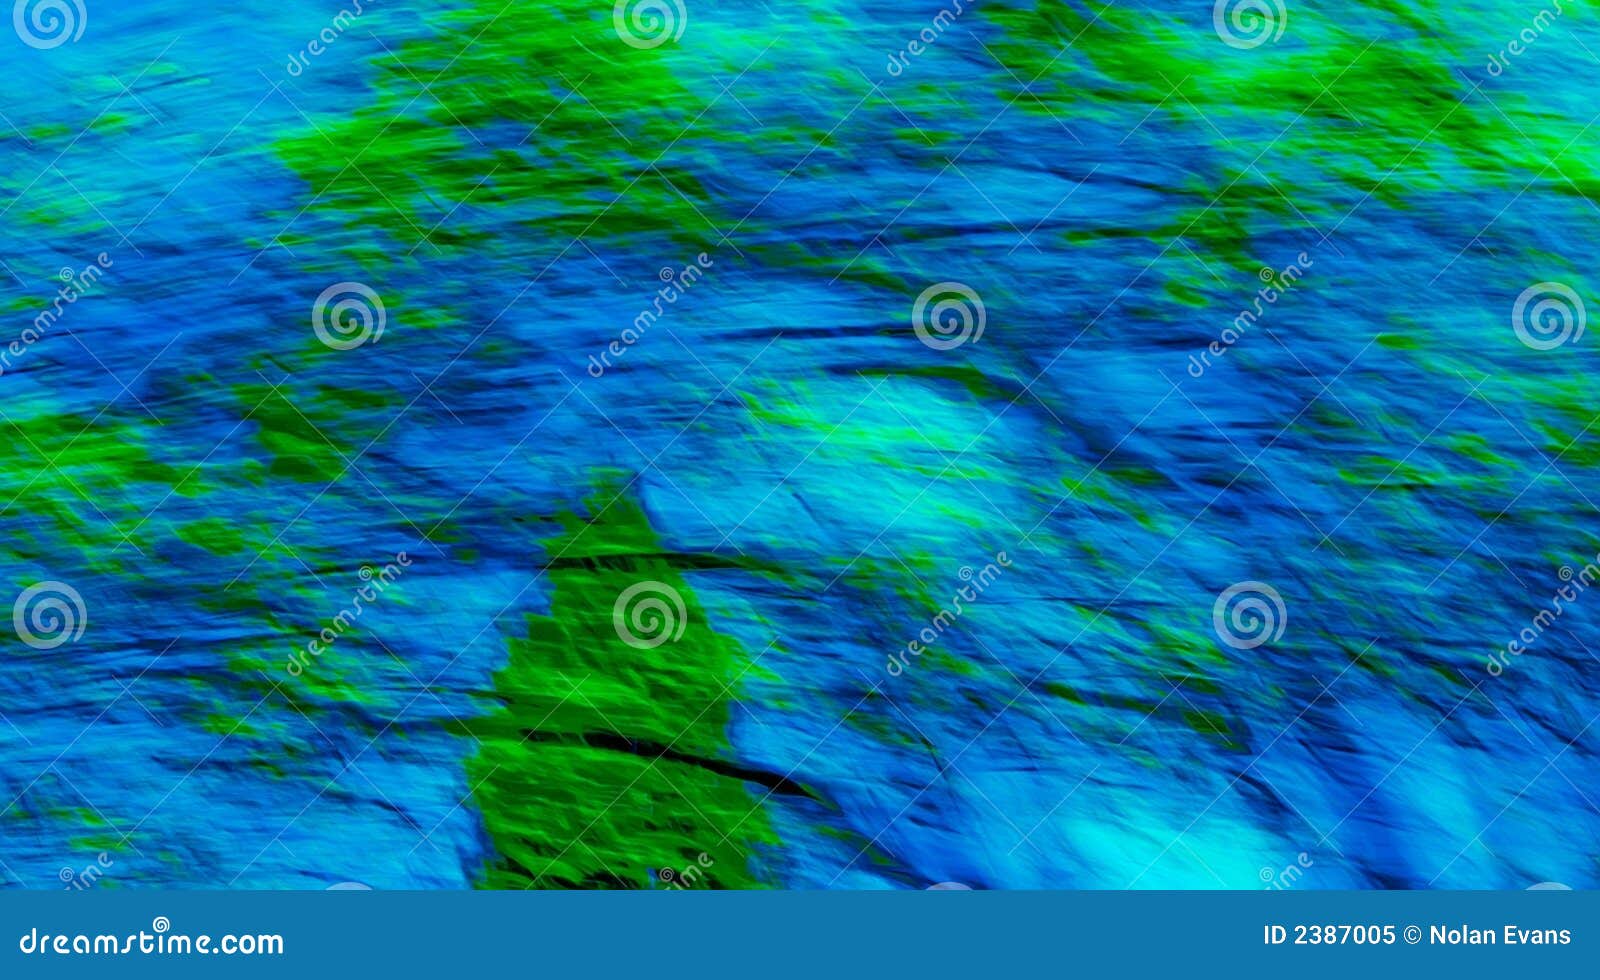 Blu e verde astratti. Immagine astratta creata usando velocità di otturatore lenta mentre spostando lunghezza focale dell'obiettivo, colori aggiunti in seguito